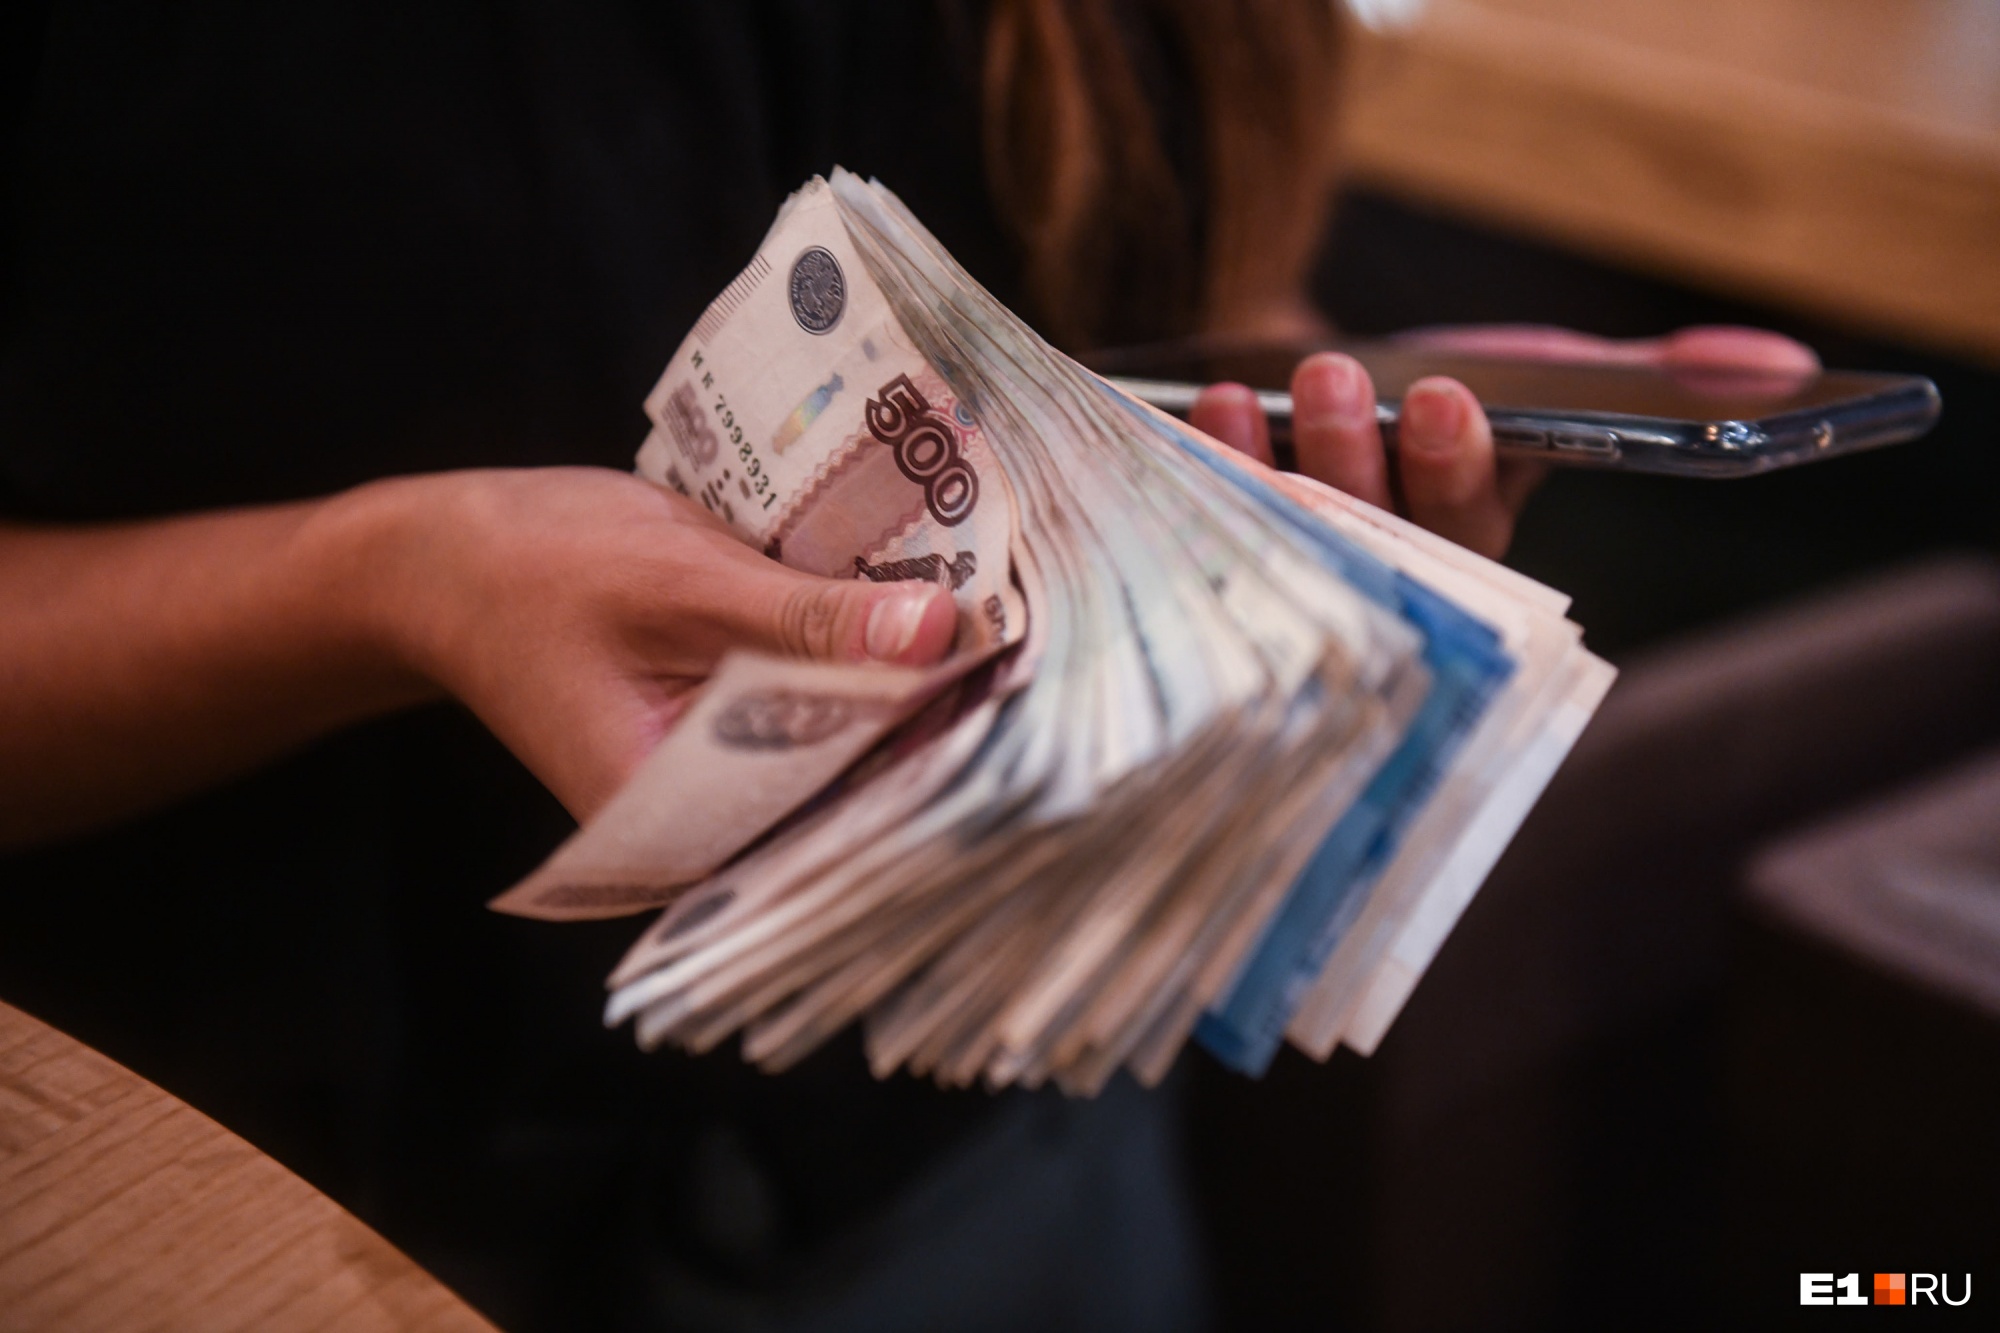 Уральский банк отказался от бешеных комиссий, из-за которых на него подали в суд